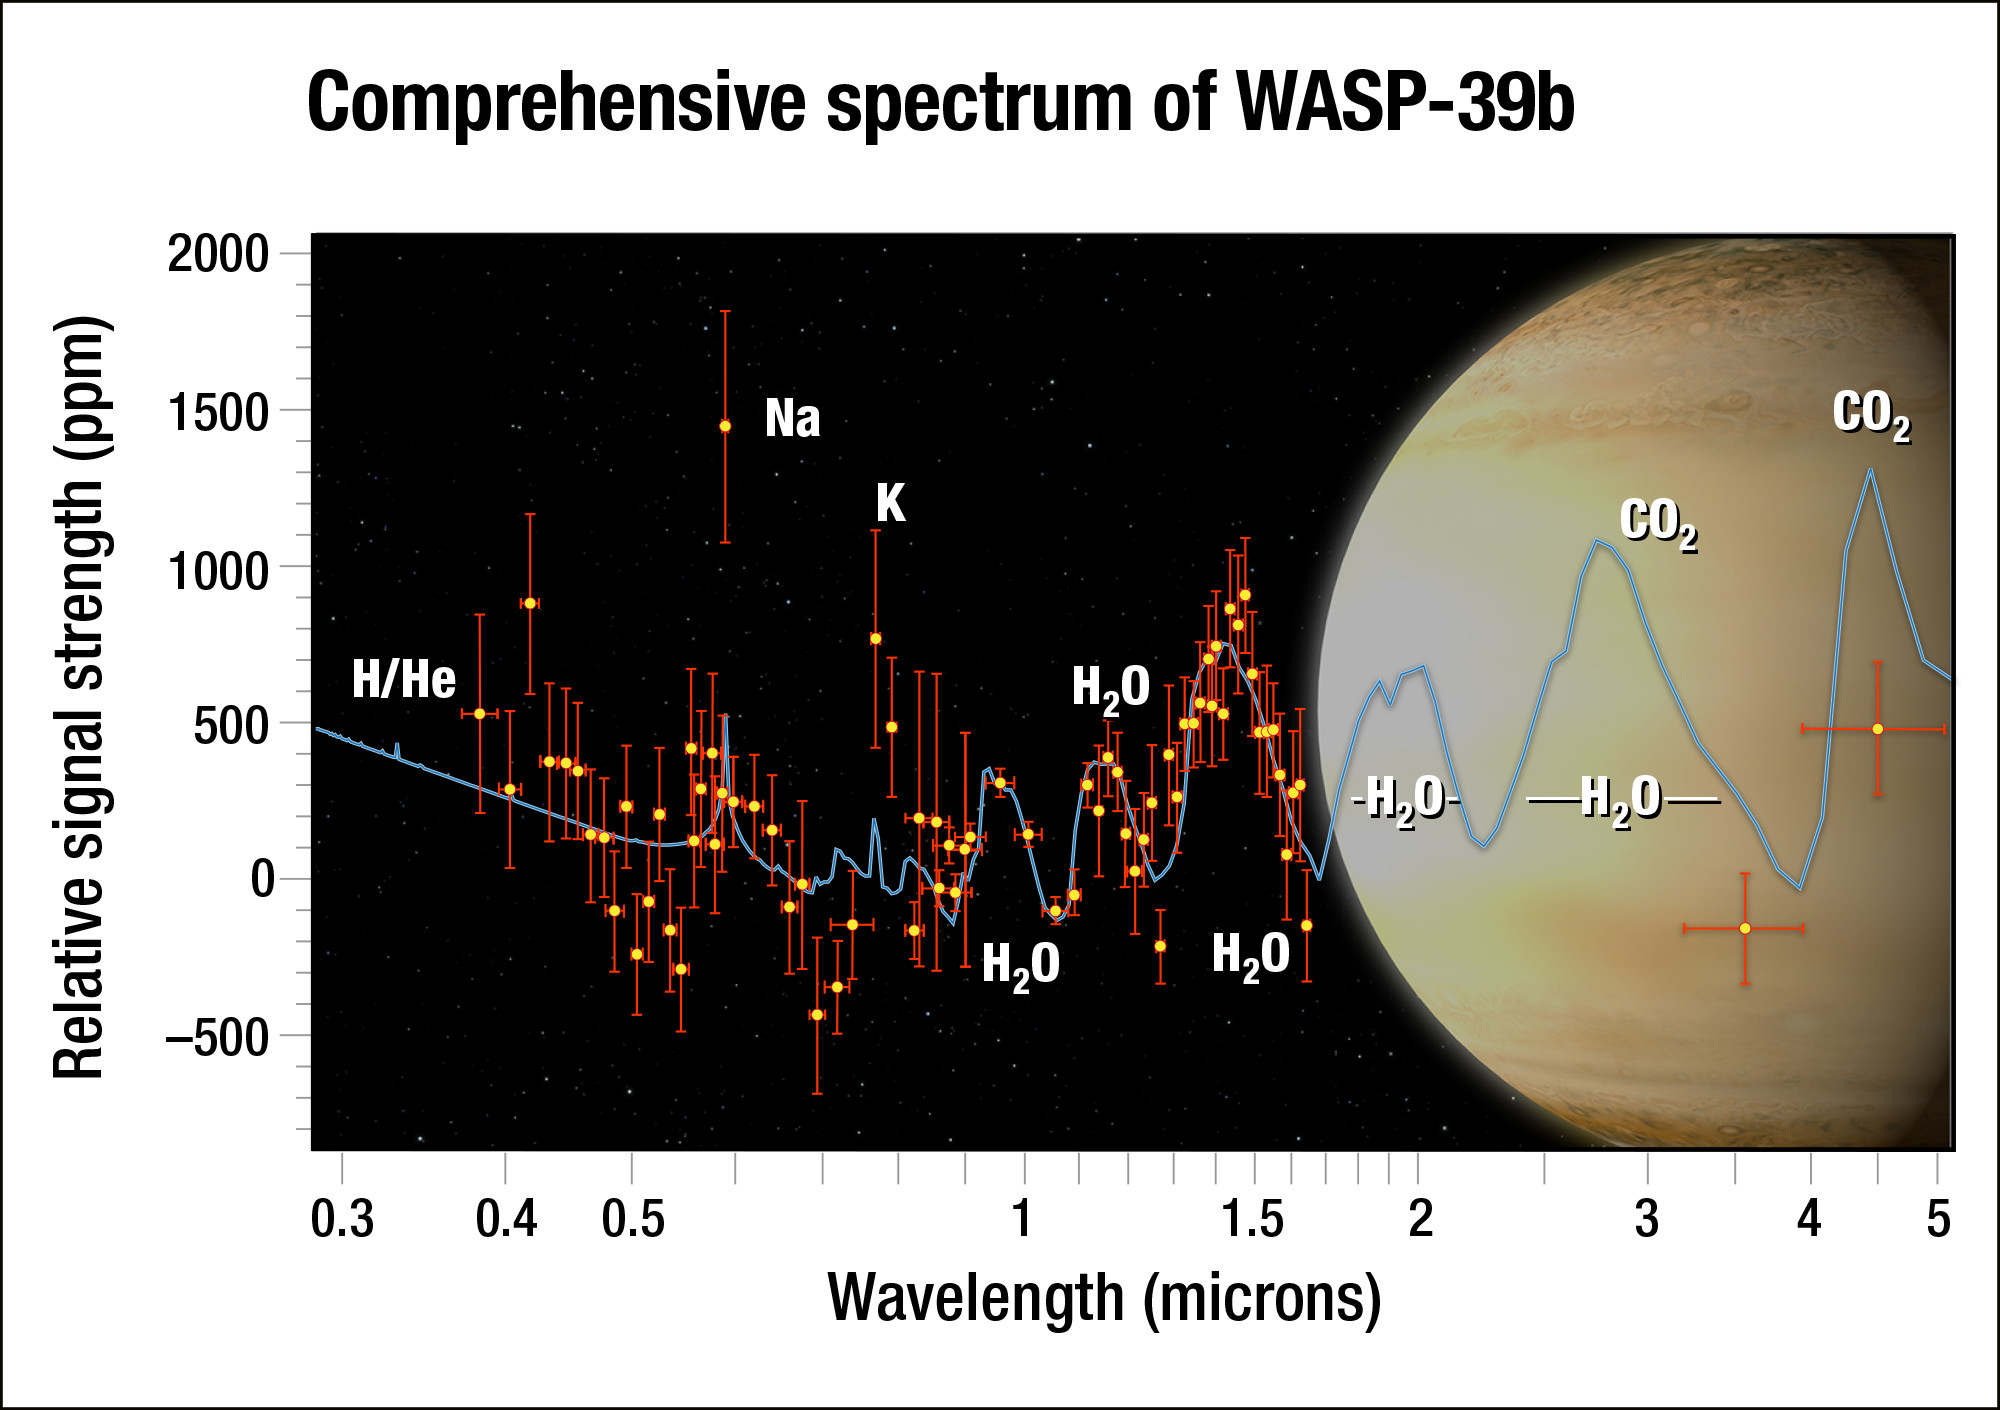 Najlepsze w swoim czasie (2018 r.) widmo transmisyjne atmosfery egzoplanety WASP-39 b w zakresie widzialnym i bliskiej podczerwieni  wykonane przez Kosmiczny Teleskop Hubble’a oraz teleskopy naziemne. Poprzez wyizolowanie promieniowania gwiazdy, które jest filtrowane przez atmosferę egzoplanety na barwy składowe, udało się astronomom znaleźć w widmie ewidentne ślady pary wodnej. Naukowcy przewidzieli, że powinna być woda na tej egzoplanecie, ale nie w tak dużej ilości jak to wynika ze spektroskopii – trzy razy tyle co na Saturnie. To sugeruje, że planeta mogła się uformować w większej odległości od gwiazdy, gdzie była bombardowana przez materiał lodowy. Źródło: NASA, ESA, G. Bacon and A. Feild (STScI), and H. Wakeford (STScI/Univ. of Exeter)